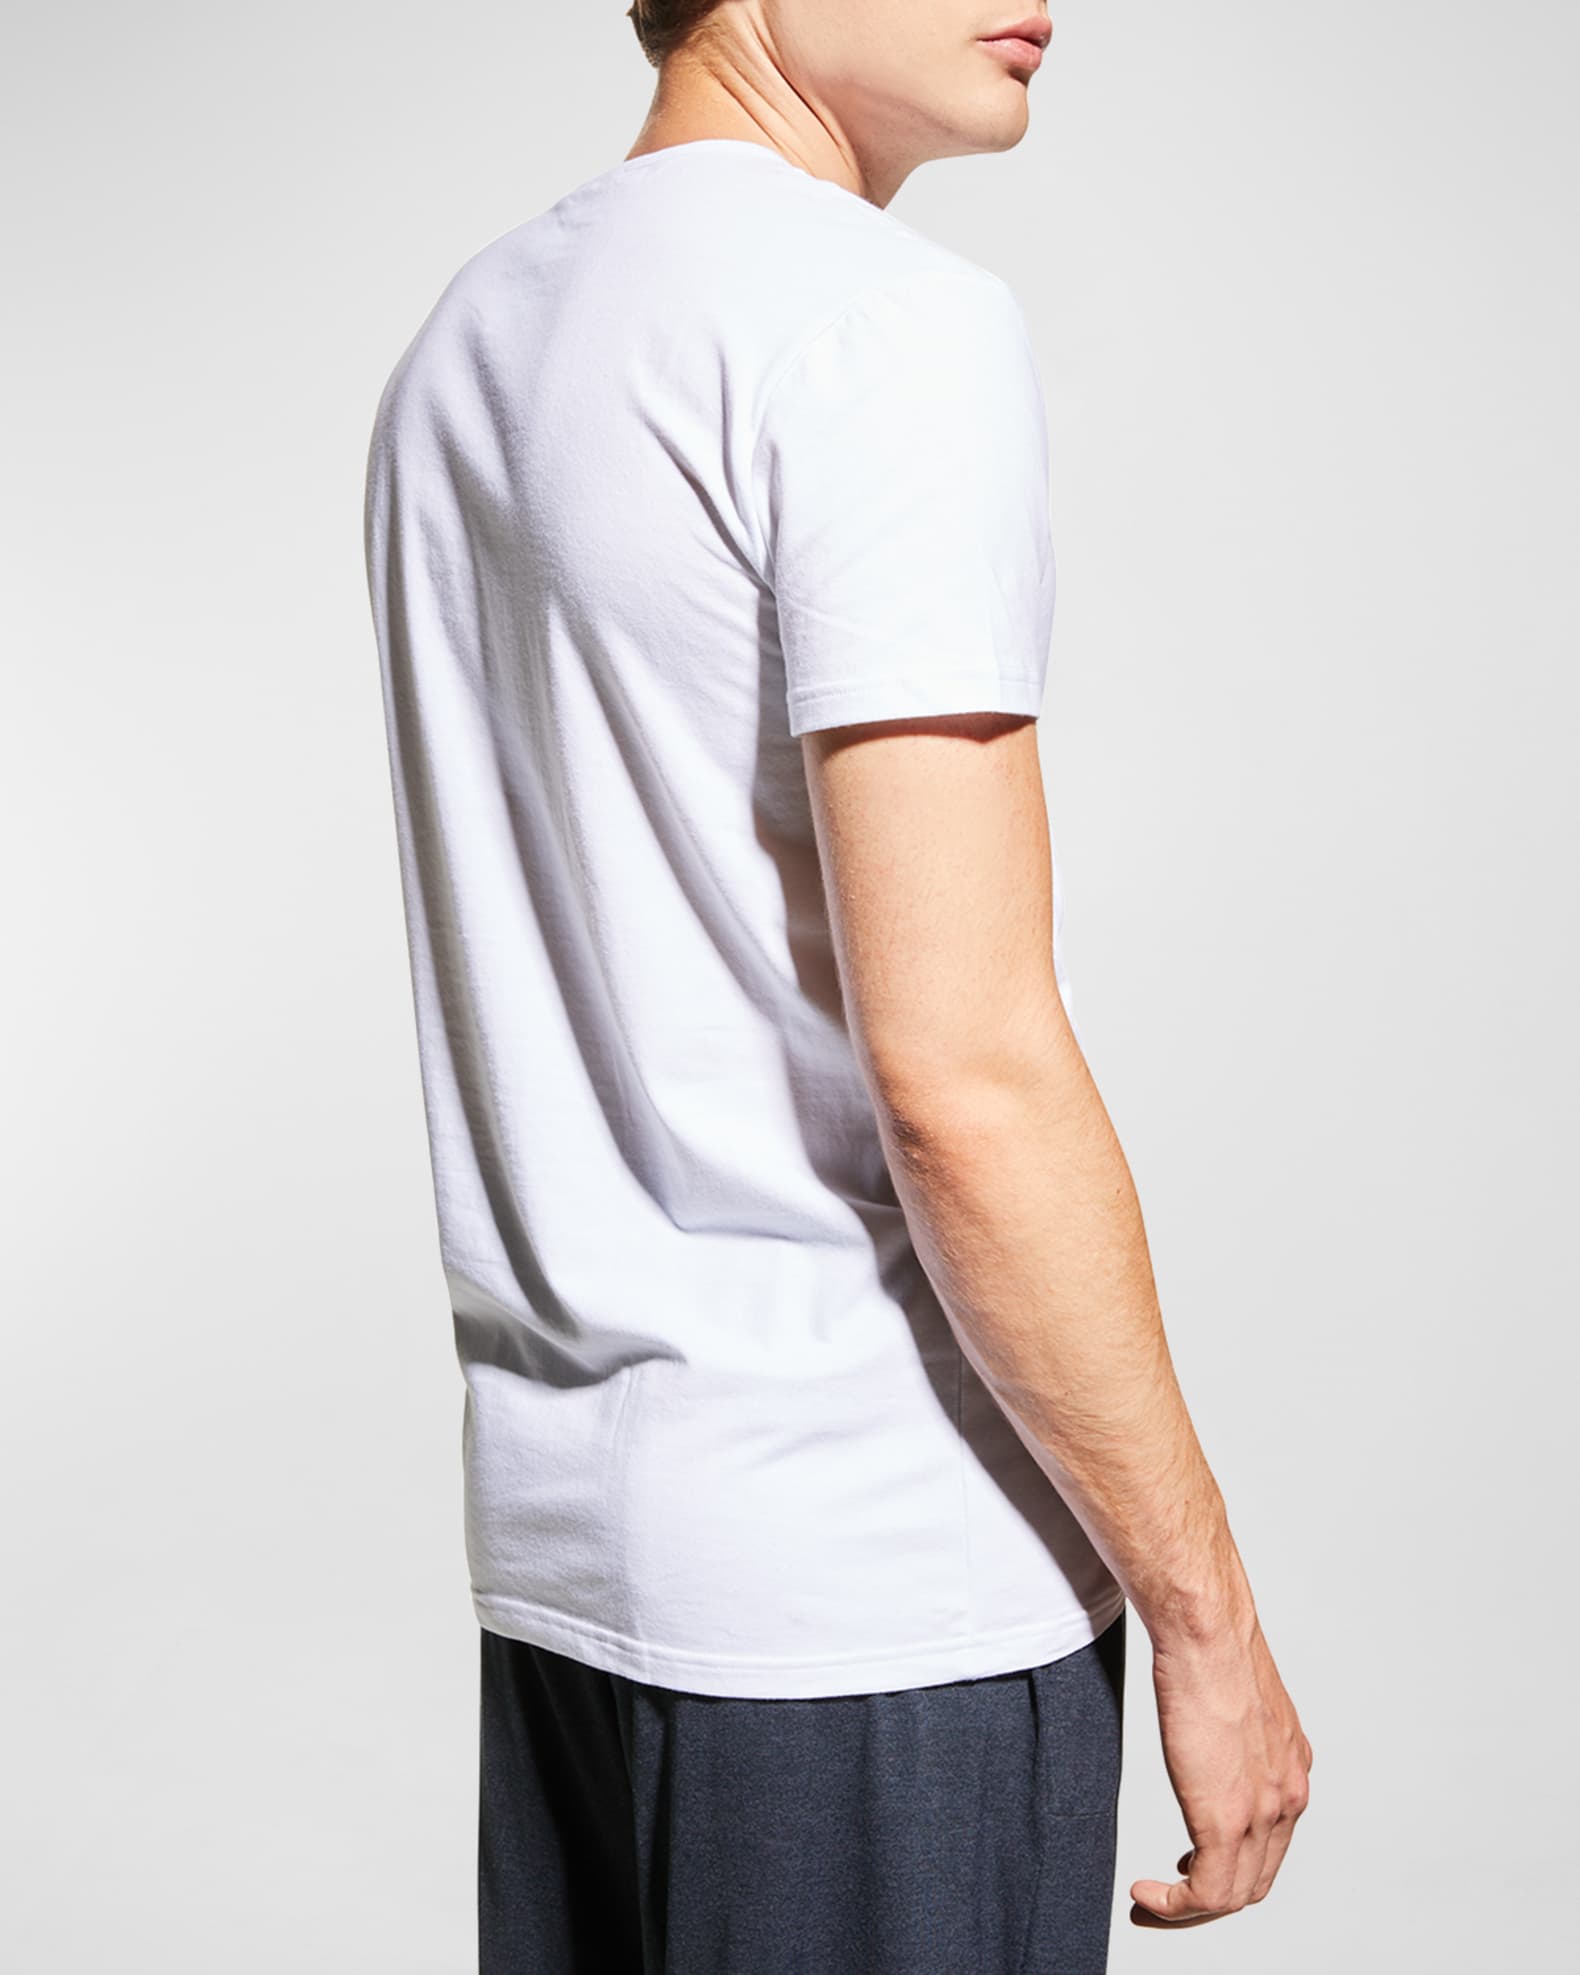 Versace Men's 2-Pack Medusa Head Logo T-Shirt | Neiman Marcus